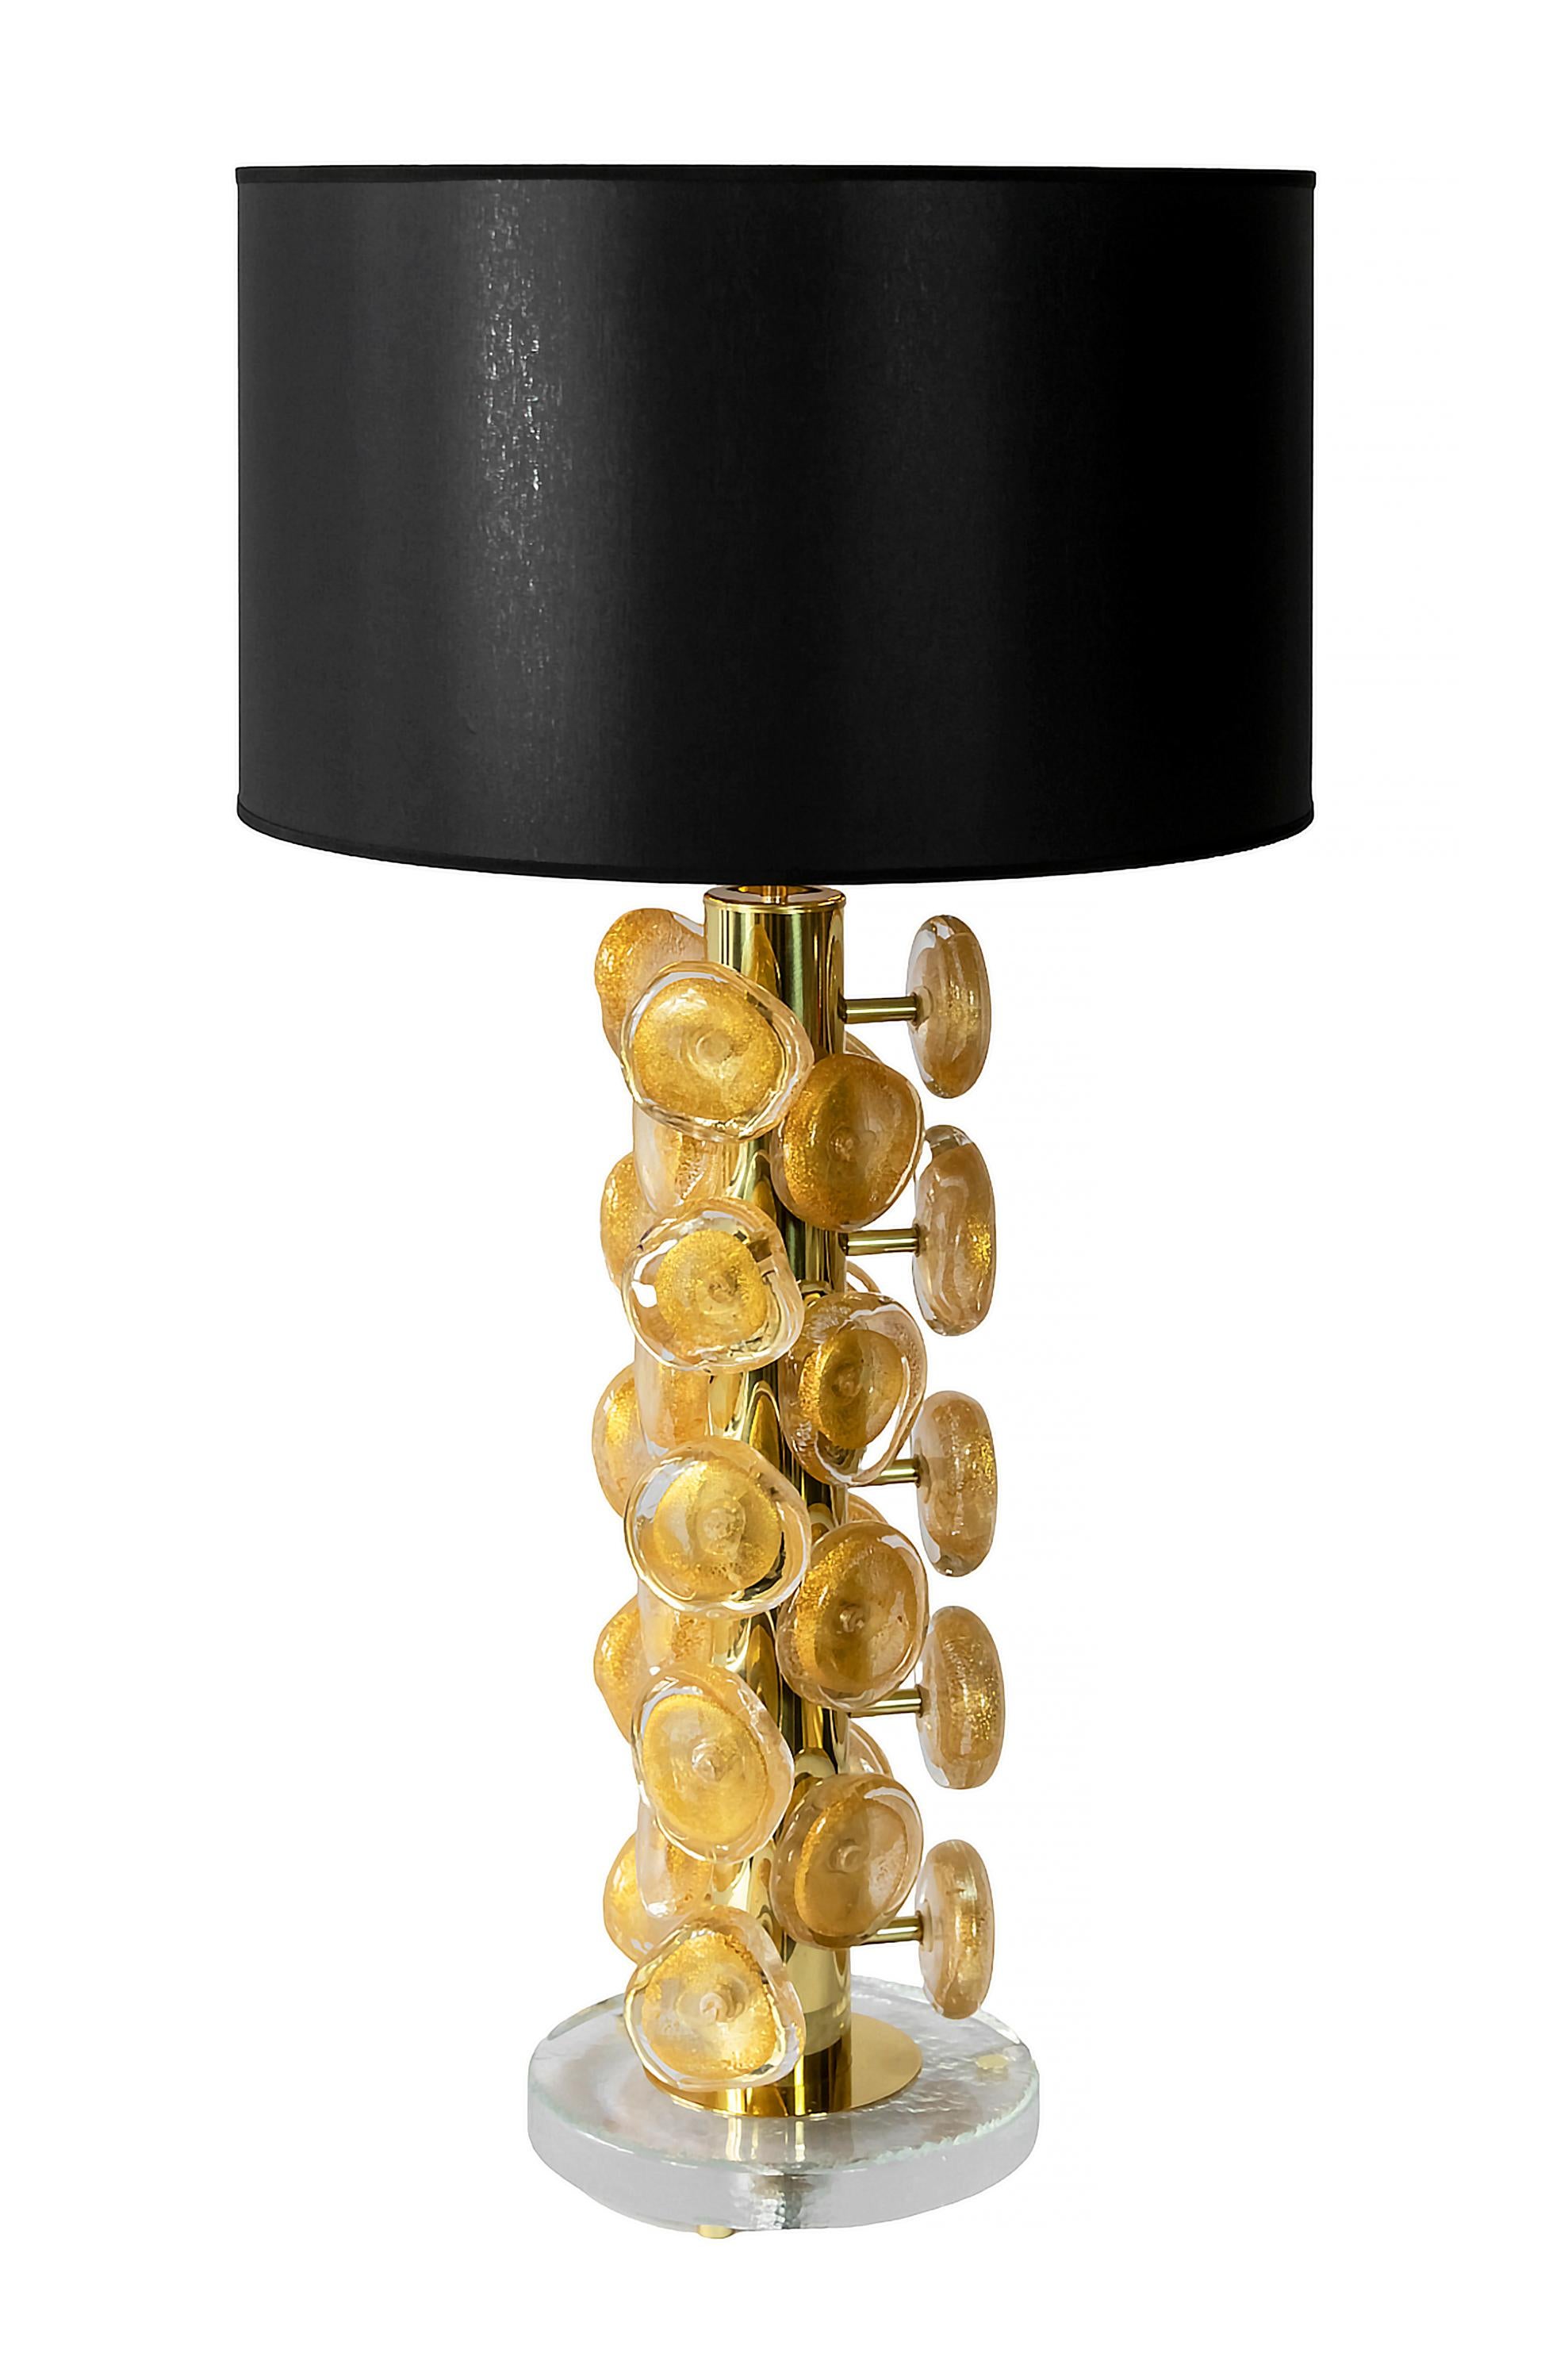 Paar italienische Tischlampen aus Messing und dickem Glassockel mit Messingbeinen.
Dekoriert mit klarem und goldenem Staub im Inneren Murano Glas Details. Jedes Glasdetail ist in asymmetrischer Form von ca. 9,5 cm Durchmesser handgefertigt.
Beide